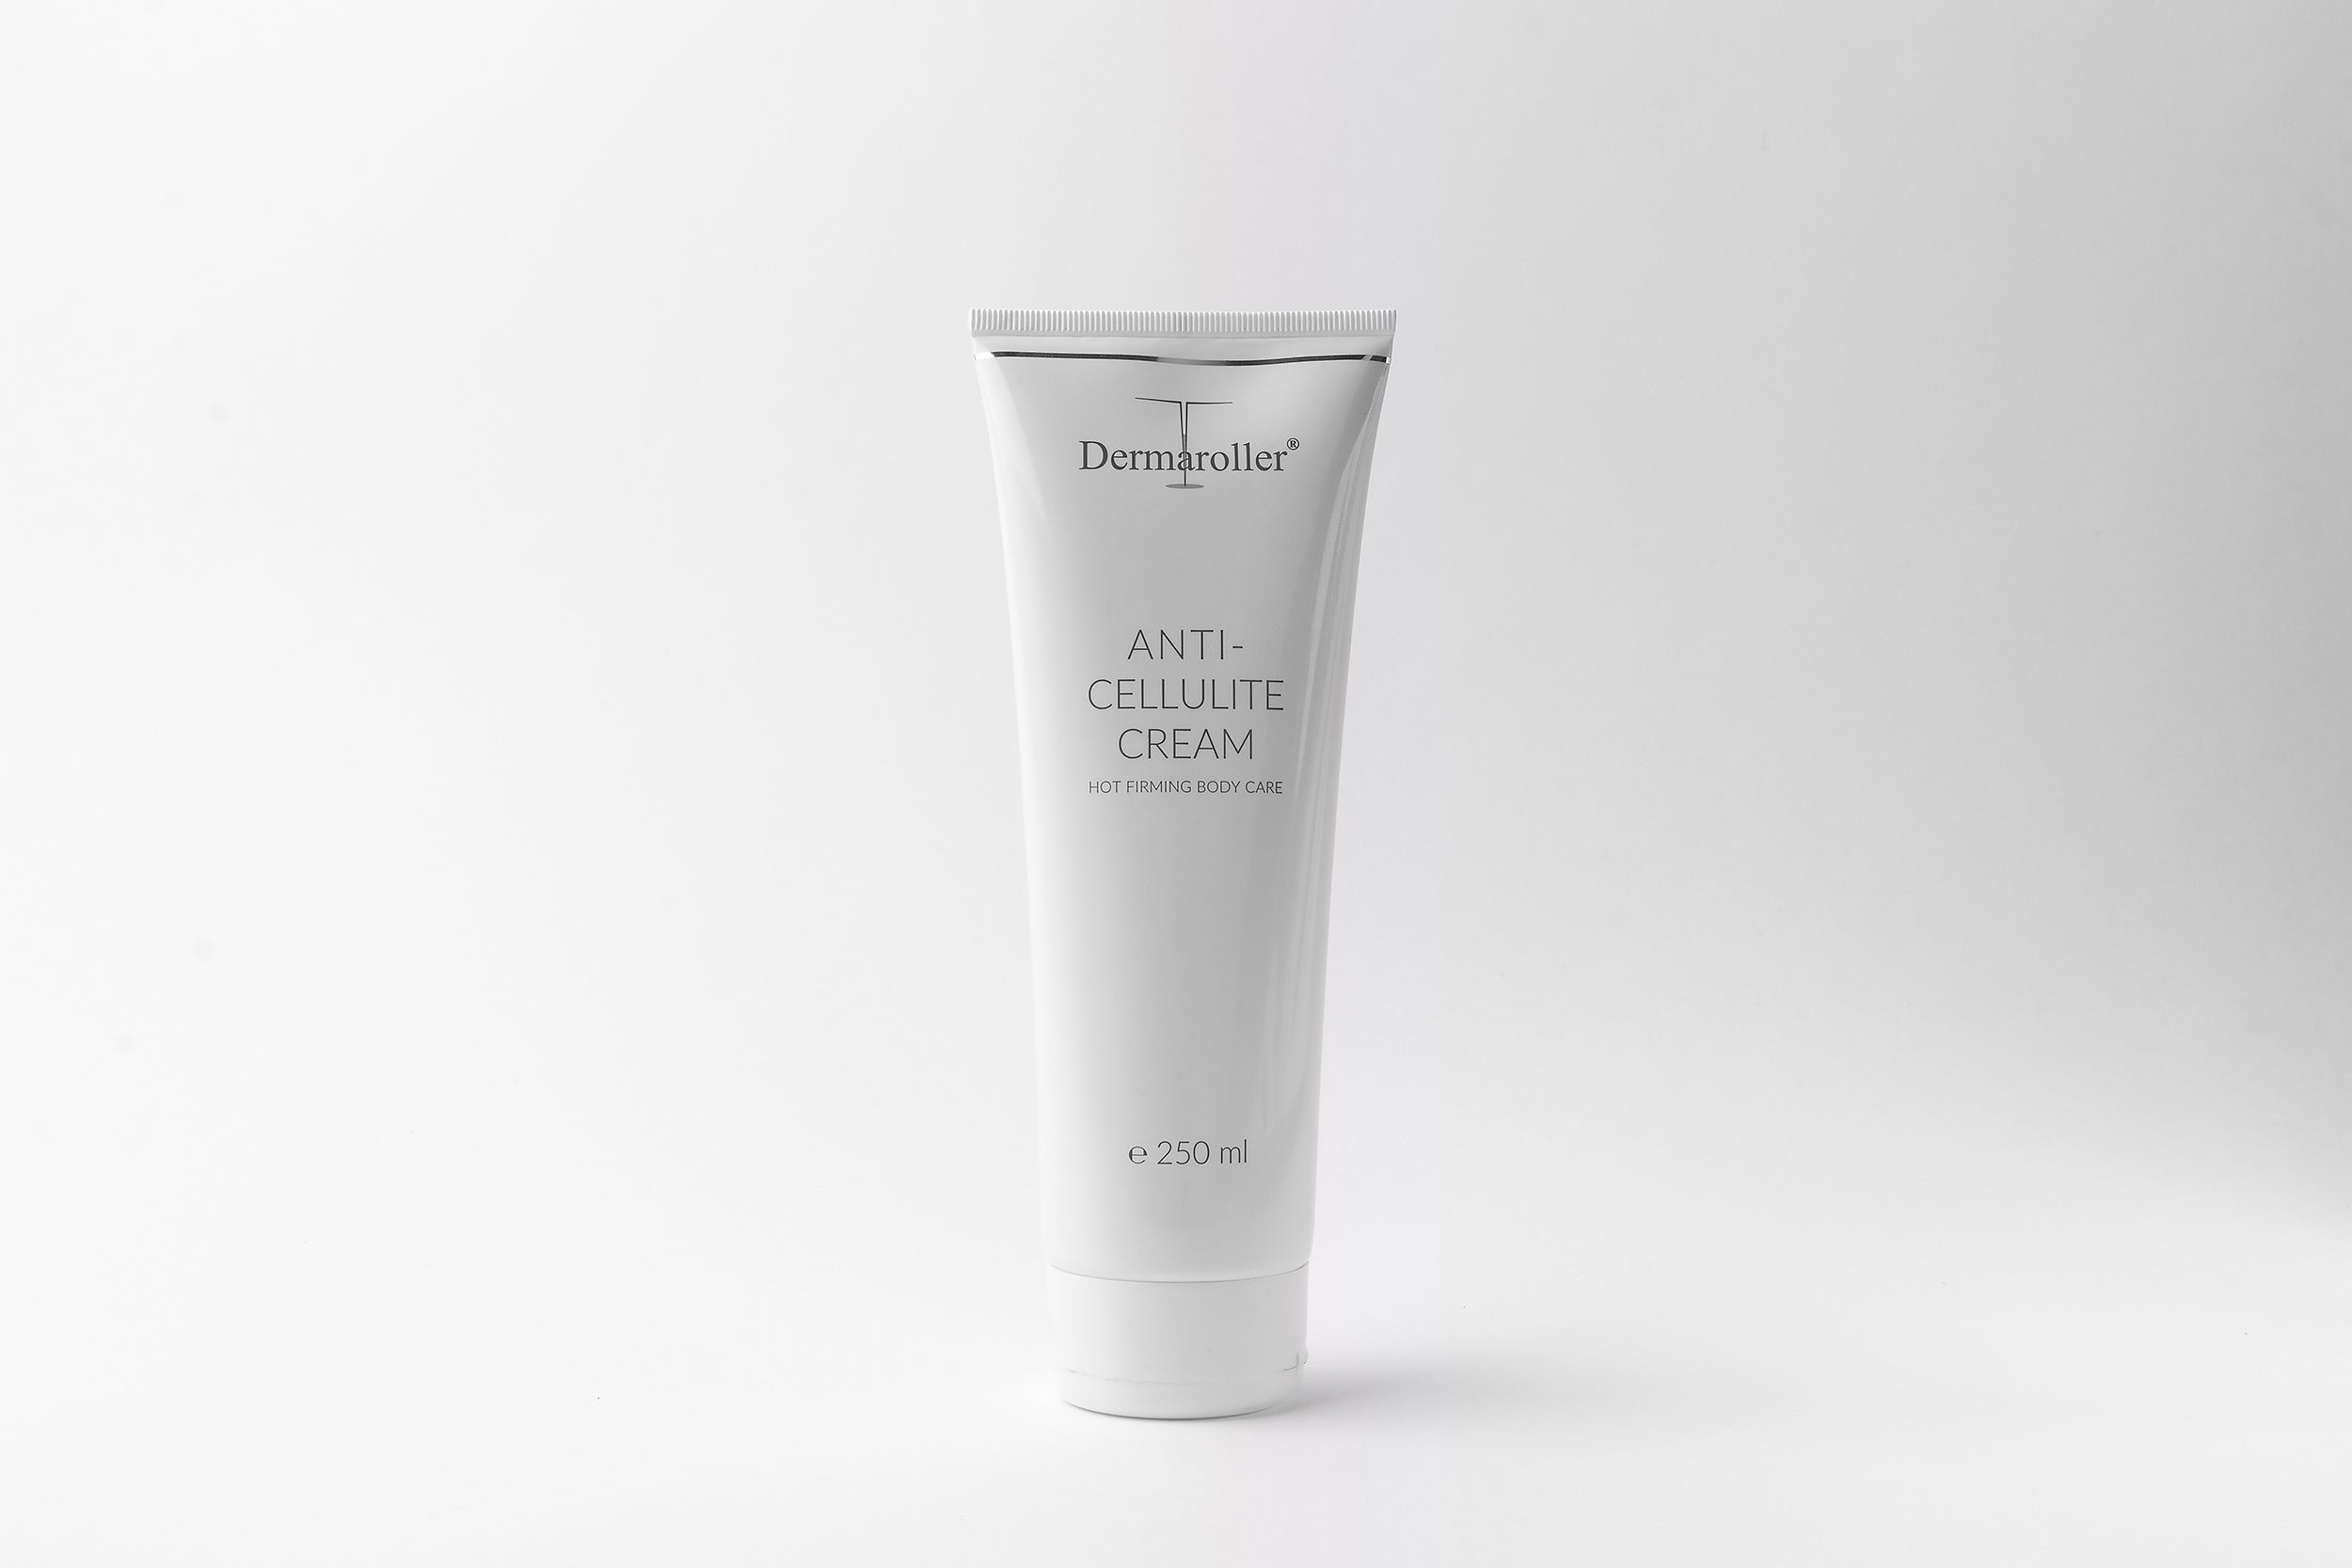 Anti-Cellulite Cream by Dermaroller®